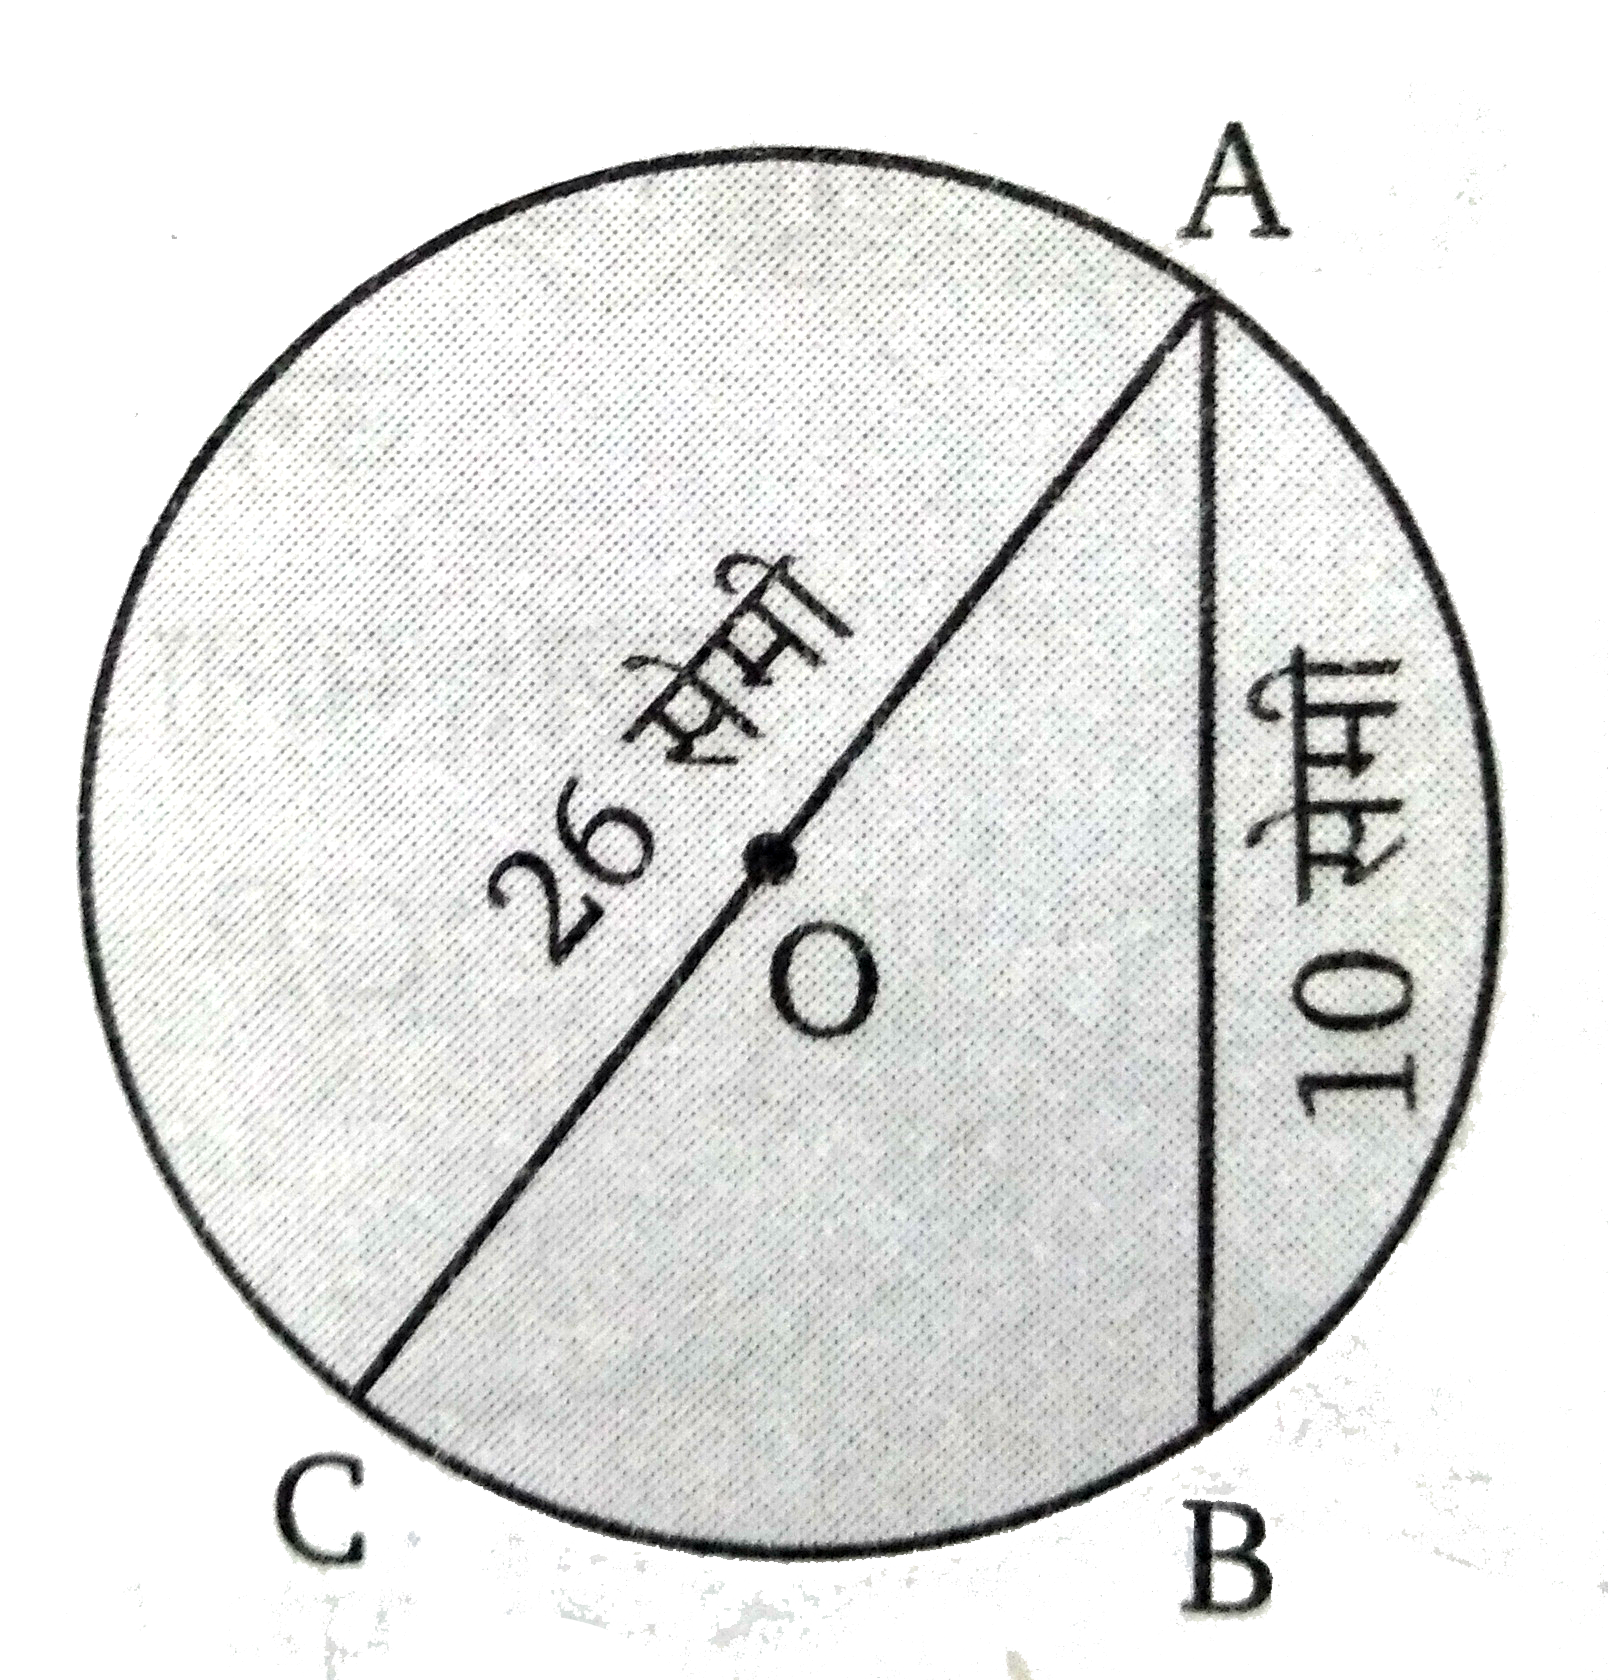 चित्र में O , वृत्त का केन्द्र, जीवा AB  = 10 सेमी तथा व्यास AC = 26 सेमी है। जीवा AB की वृत्त के केन्द्र से दूरी ज्ञात कीजिए।